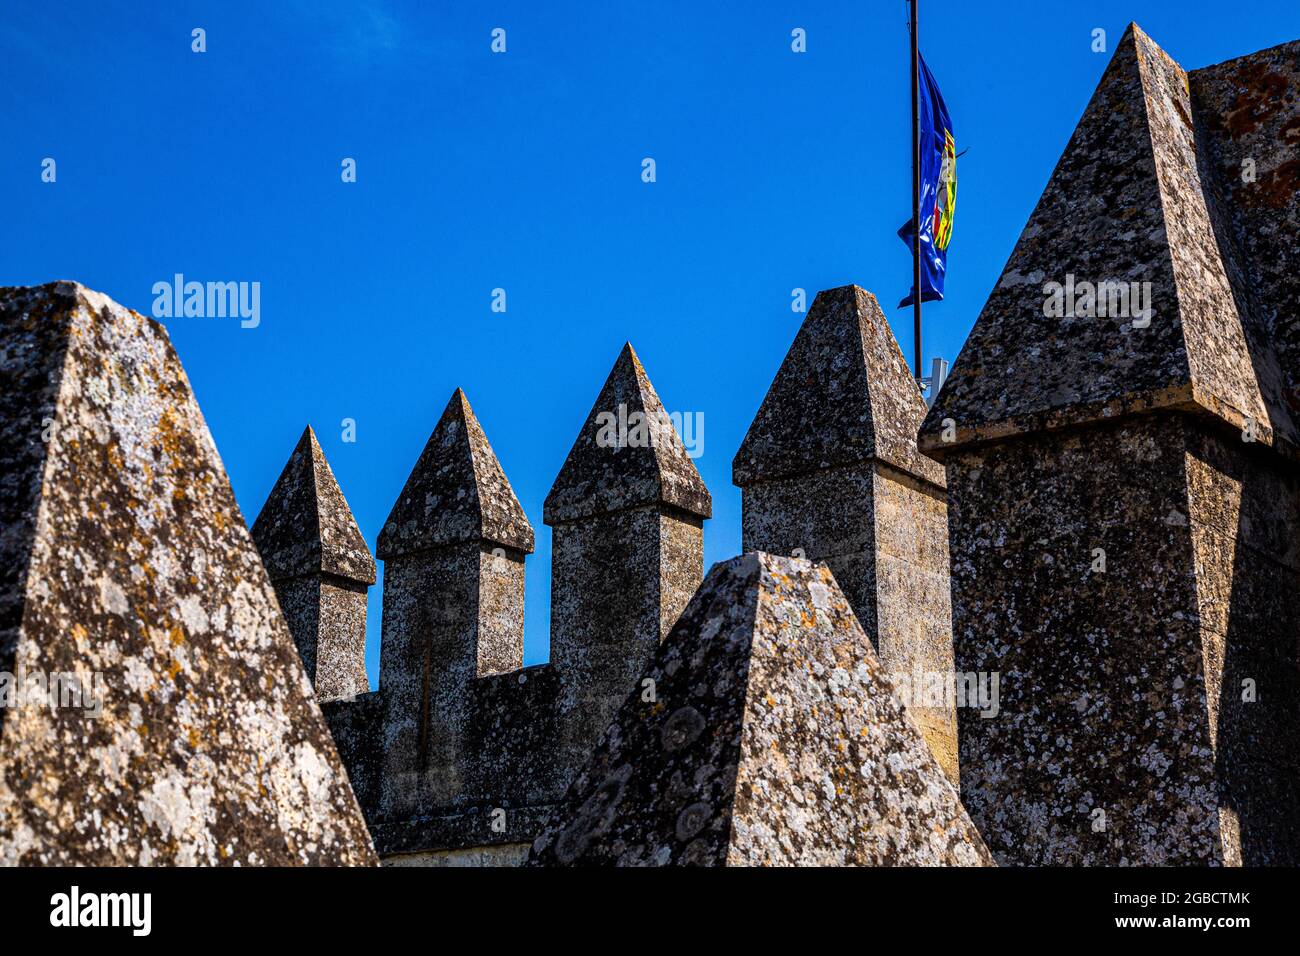 Pareti in pietra e grandi torri quadrate con passaggi difensivi in cima con vedute interne ed esterne Foto Stock